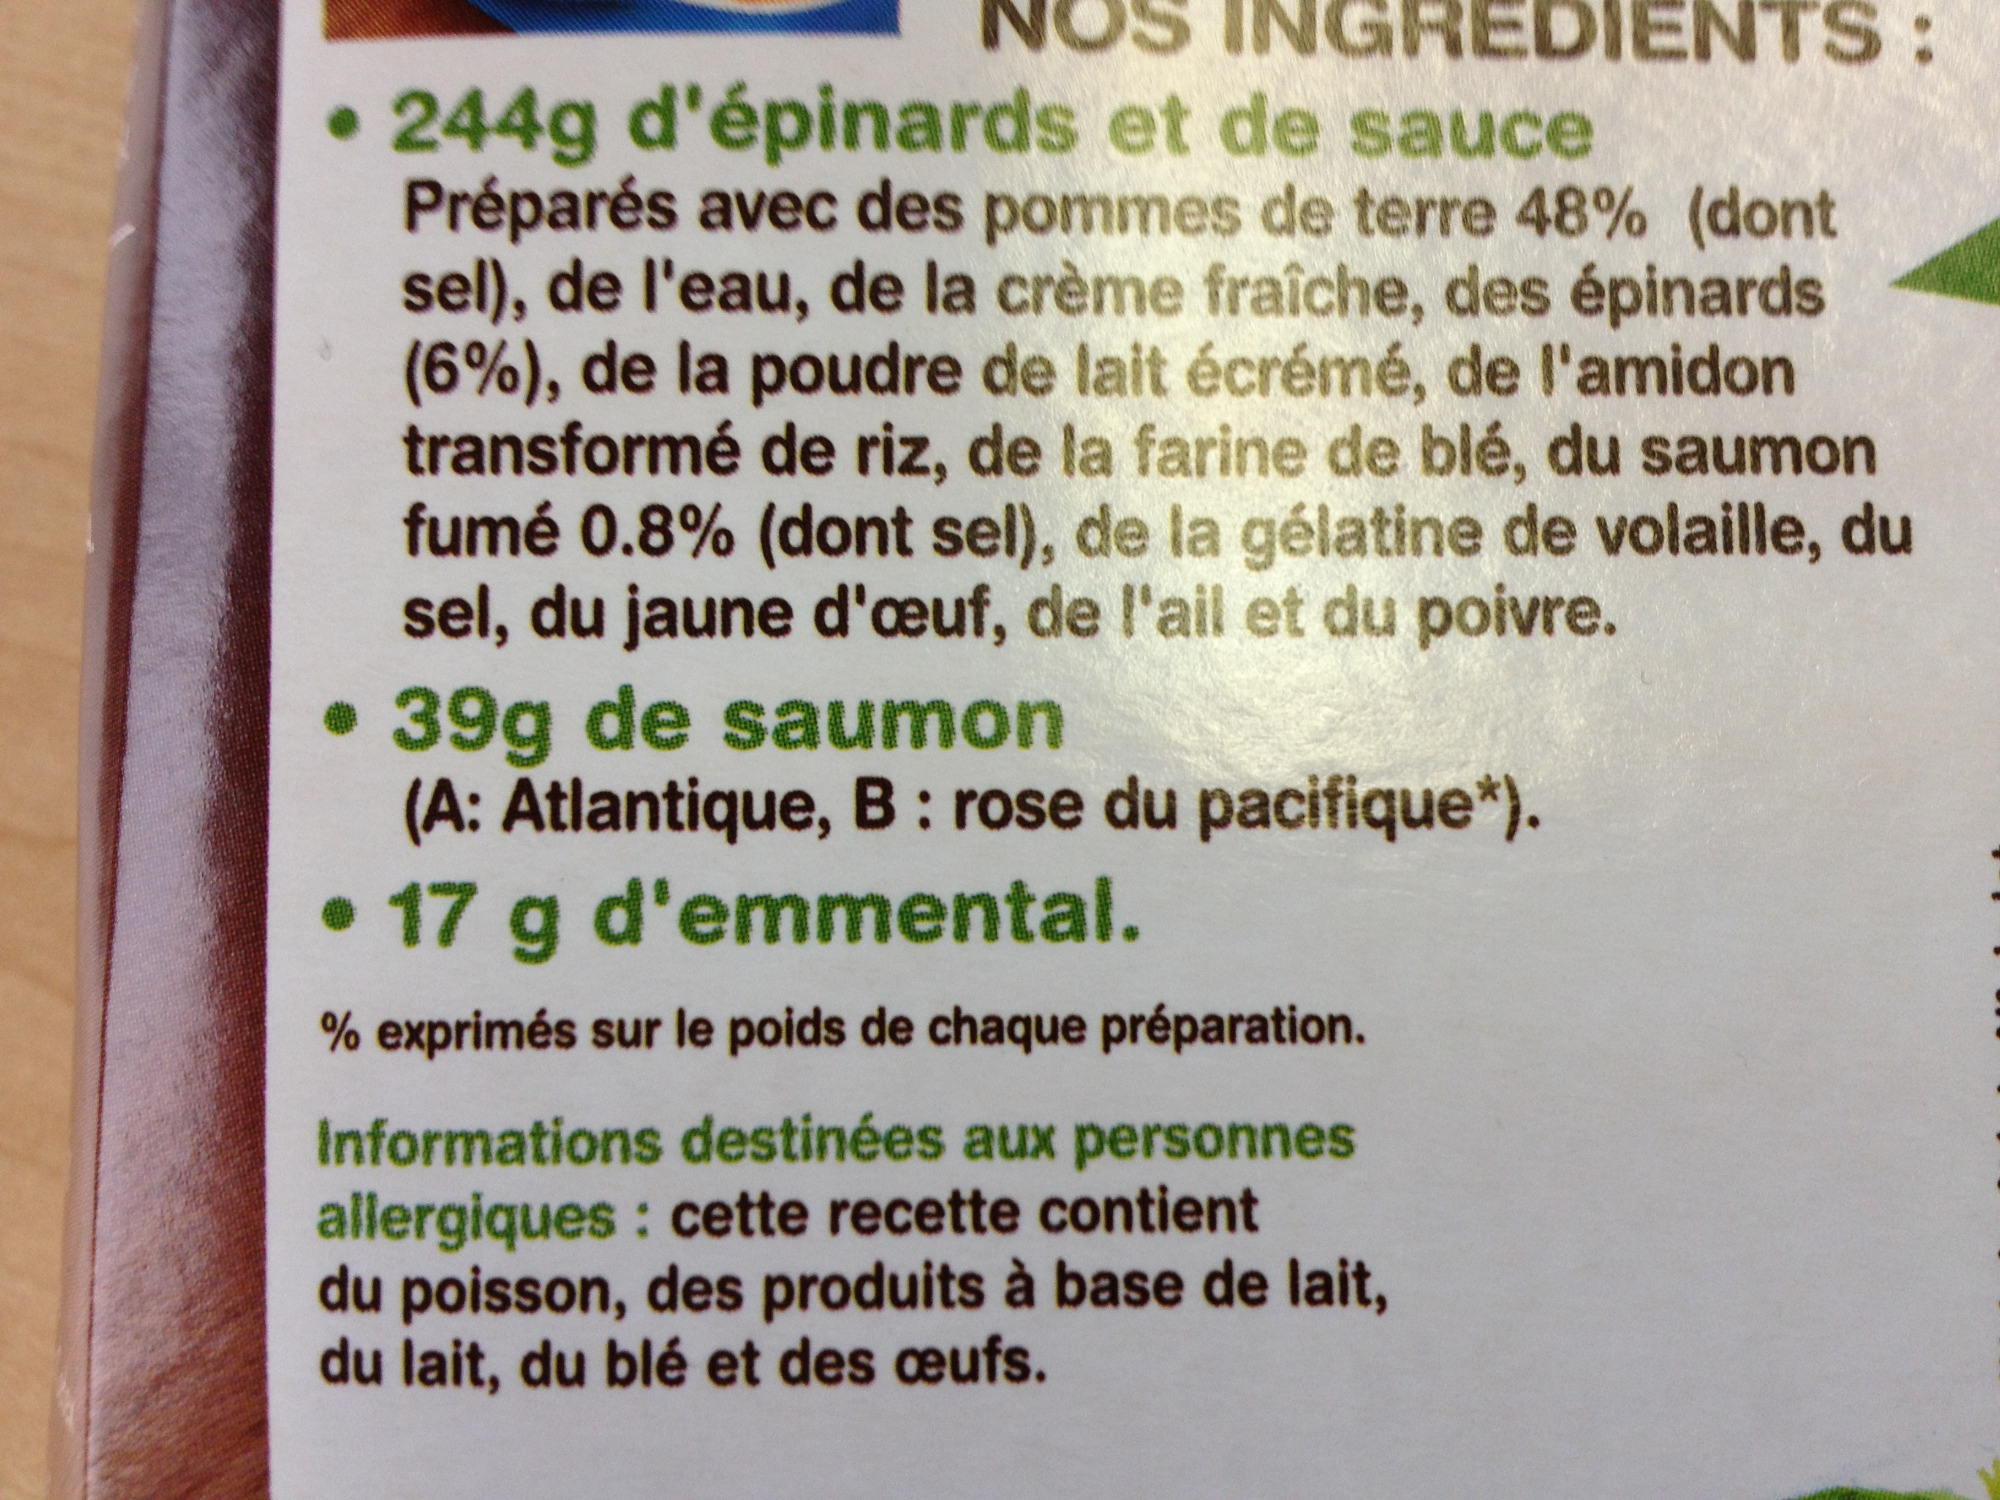 Gratin de pommes de terre saumon* épinards - Ingredients - fr